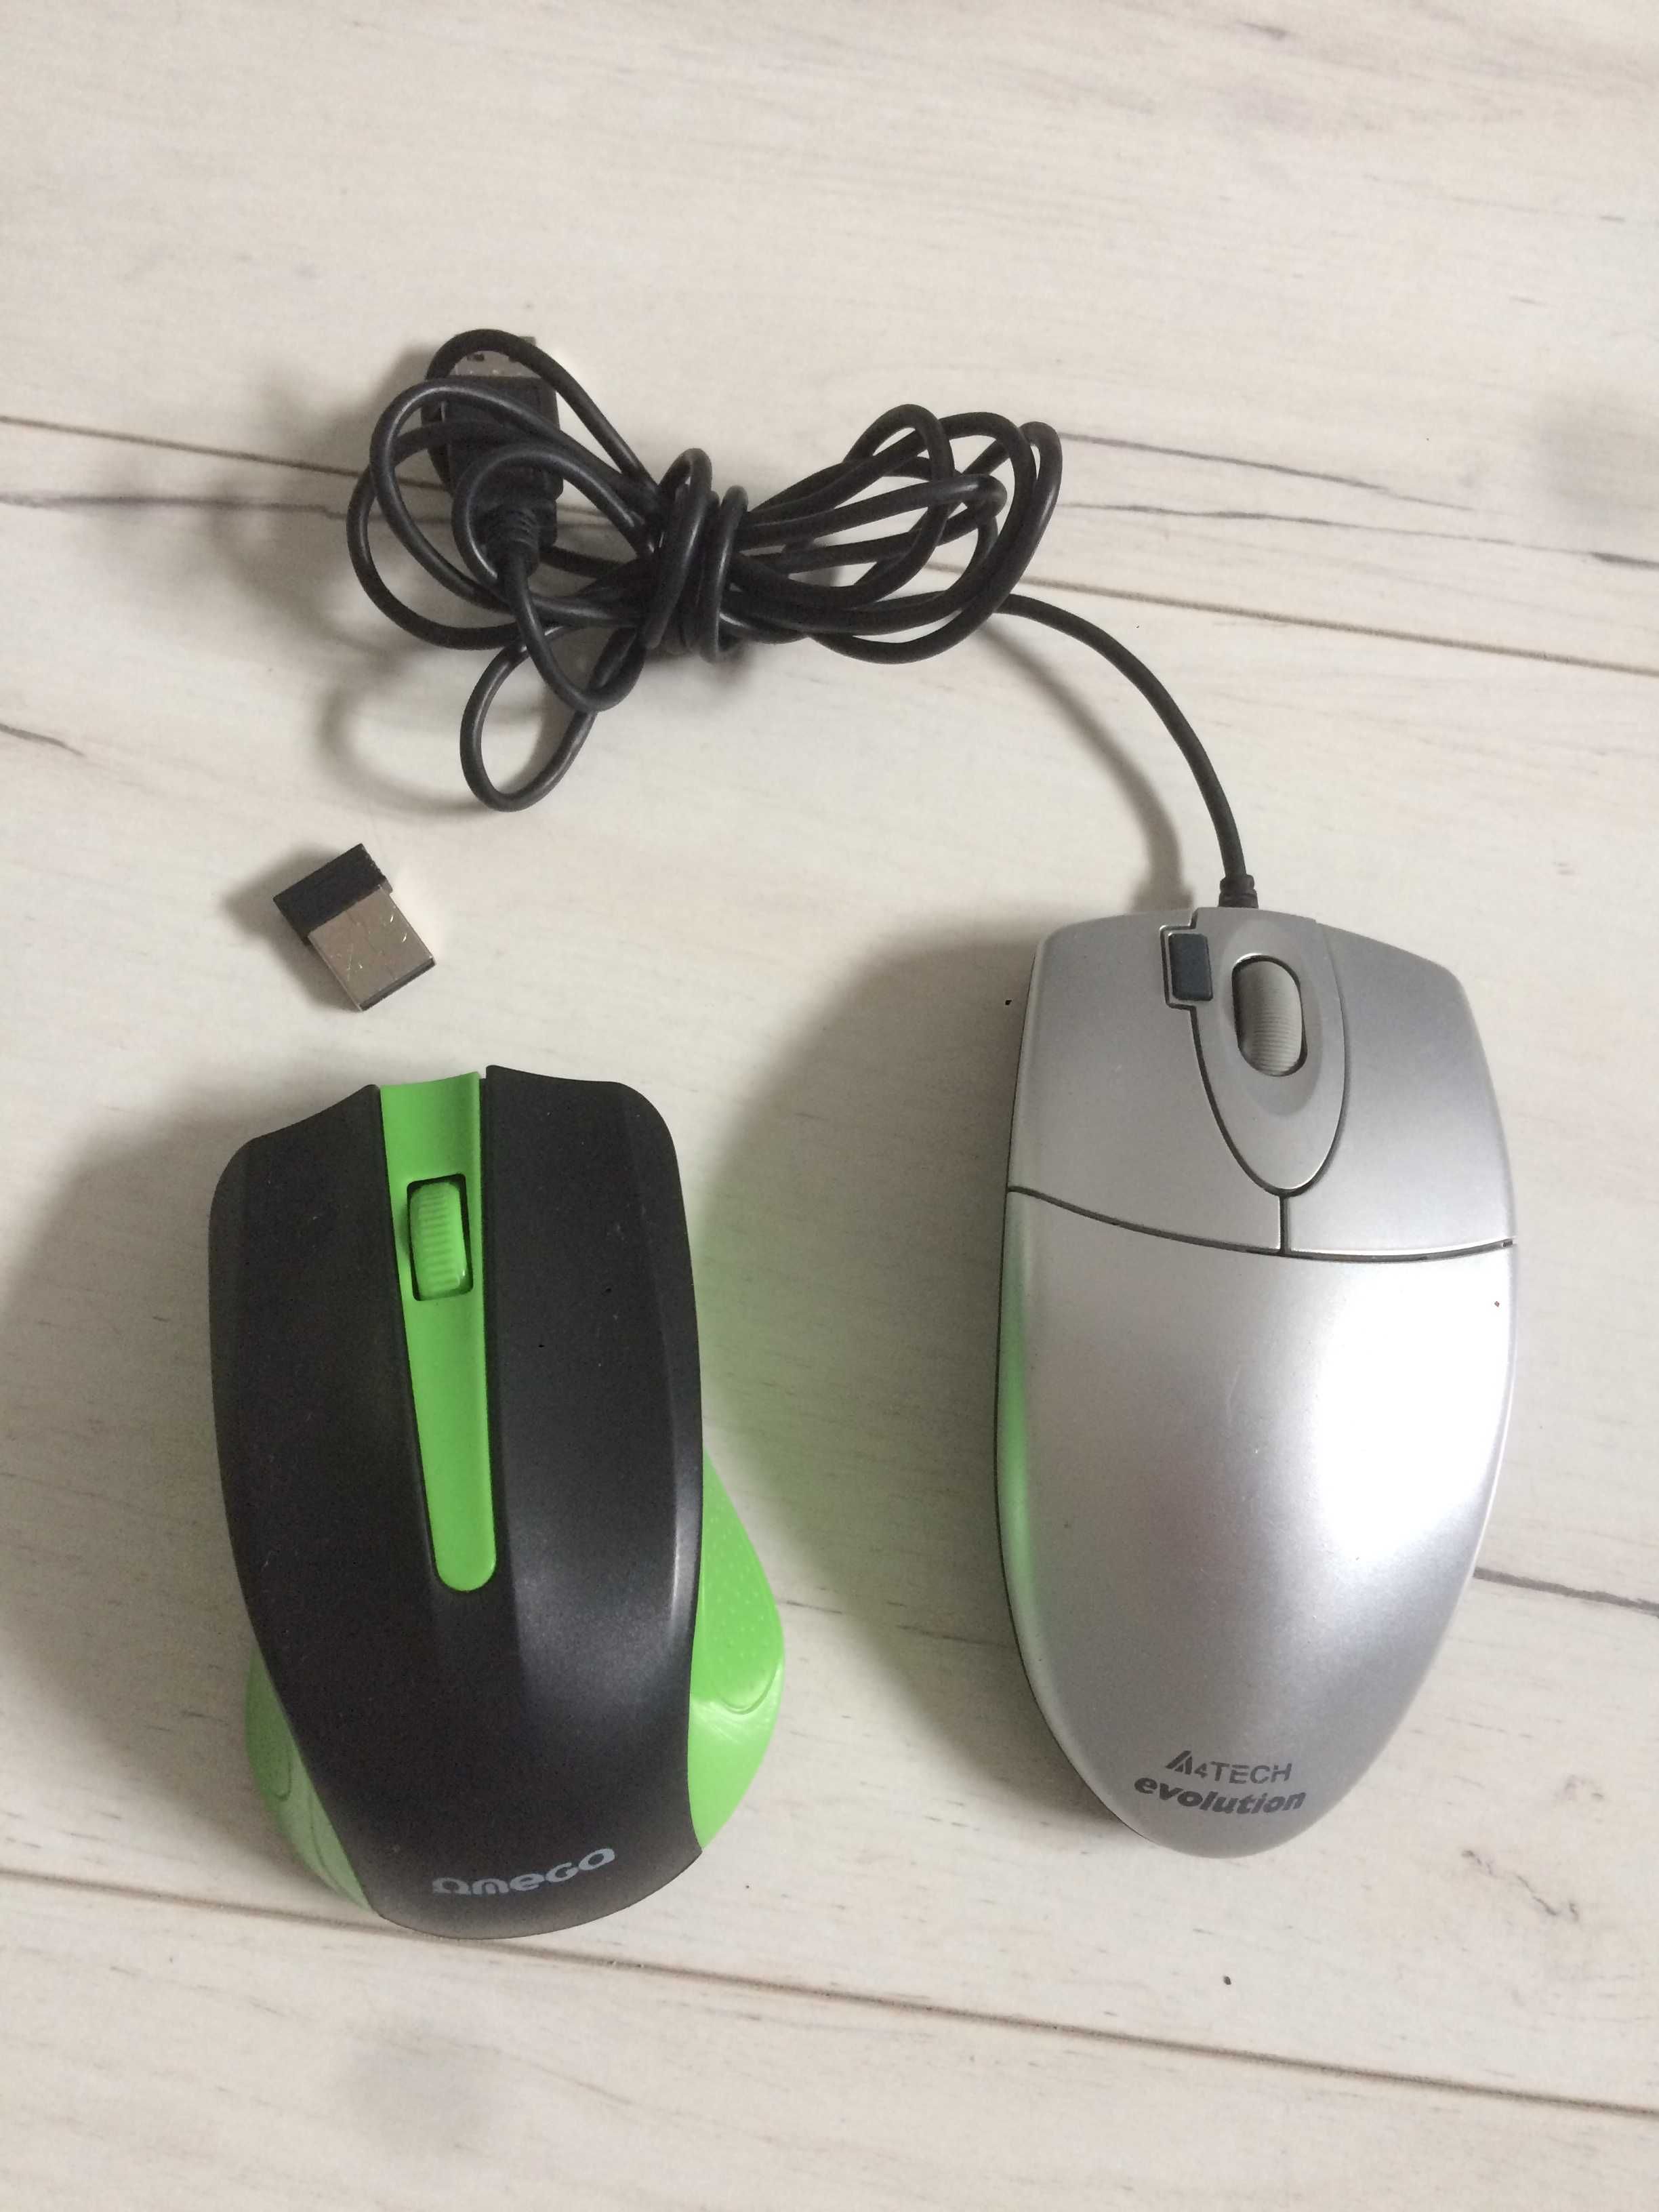 dwie myszki komputerowe bezprzewodowa i z przewodem